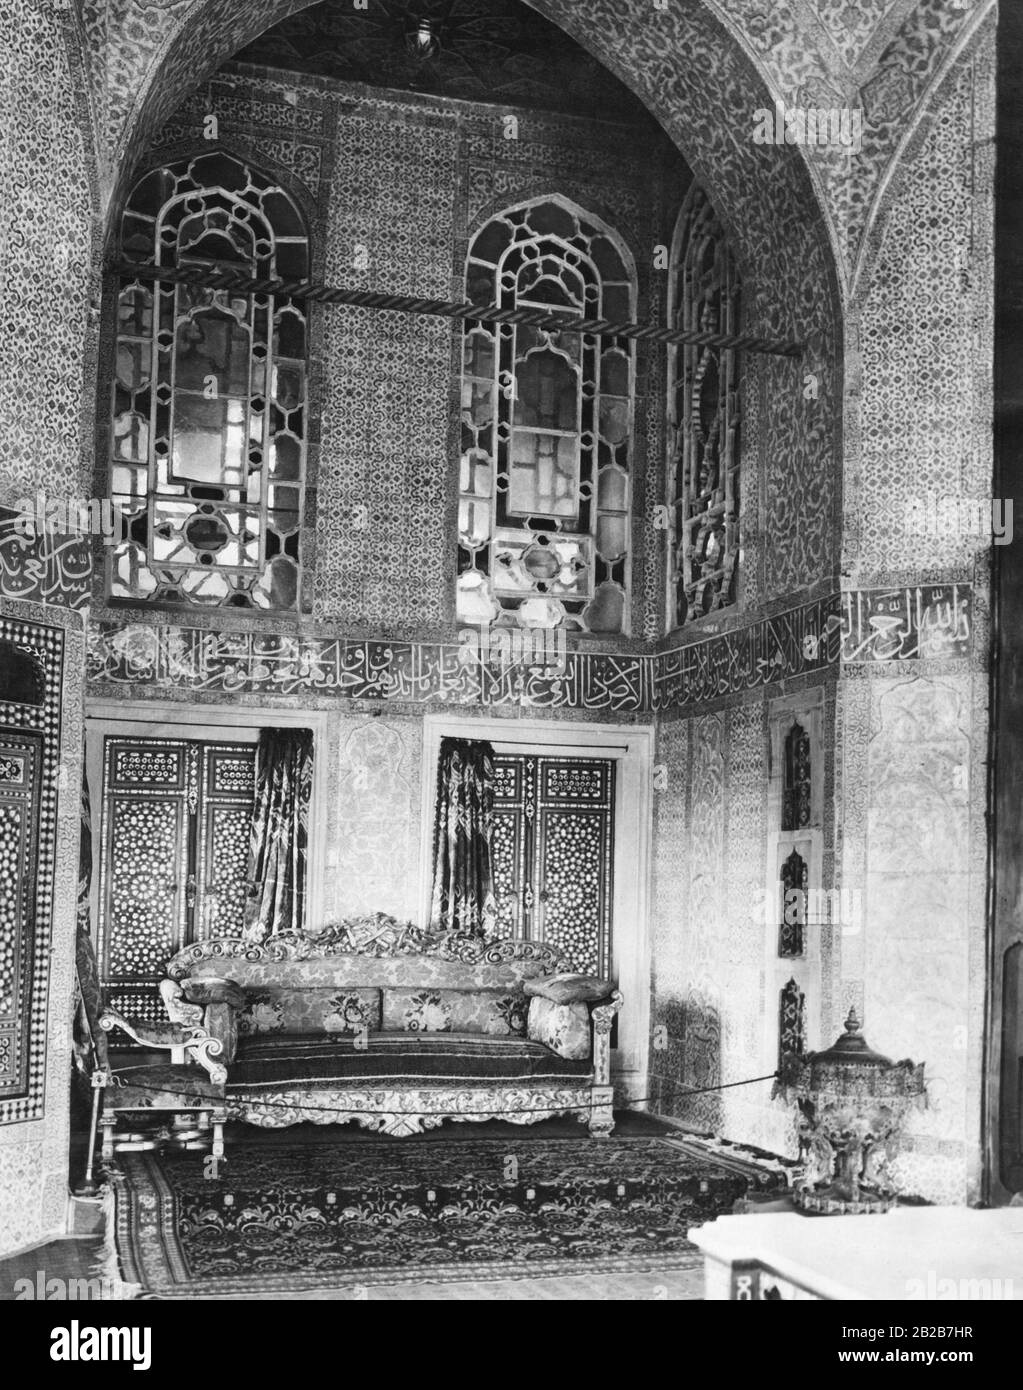 Una camera in un palazzo ottomano del sultano, probabilmente nel Palazzo Topkapi di Istanbul. Foto non ondulata. Foto Stock